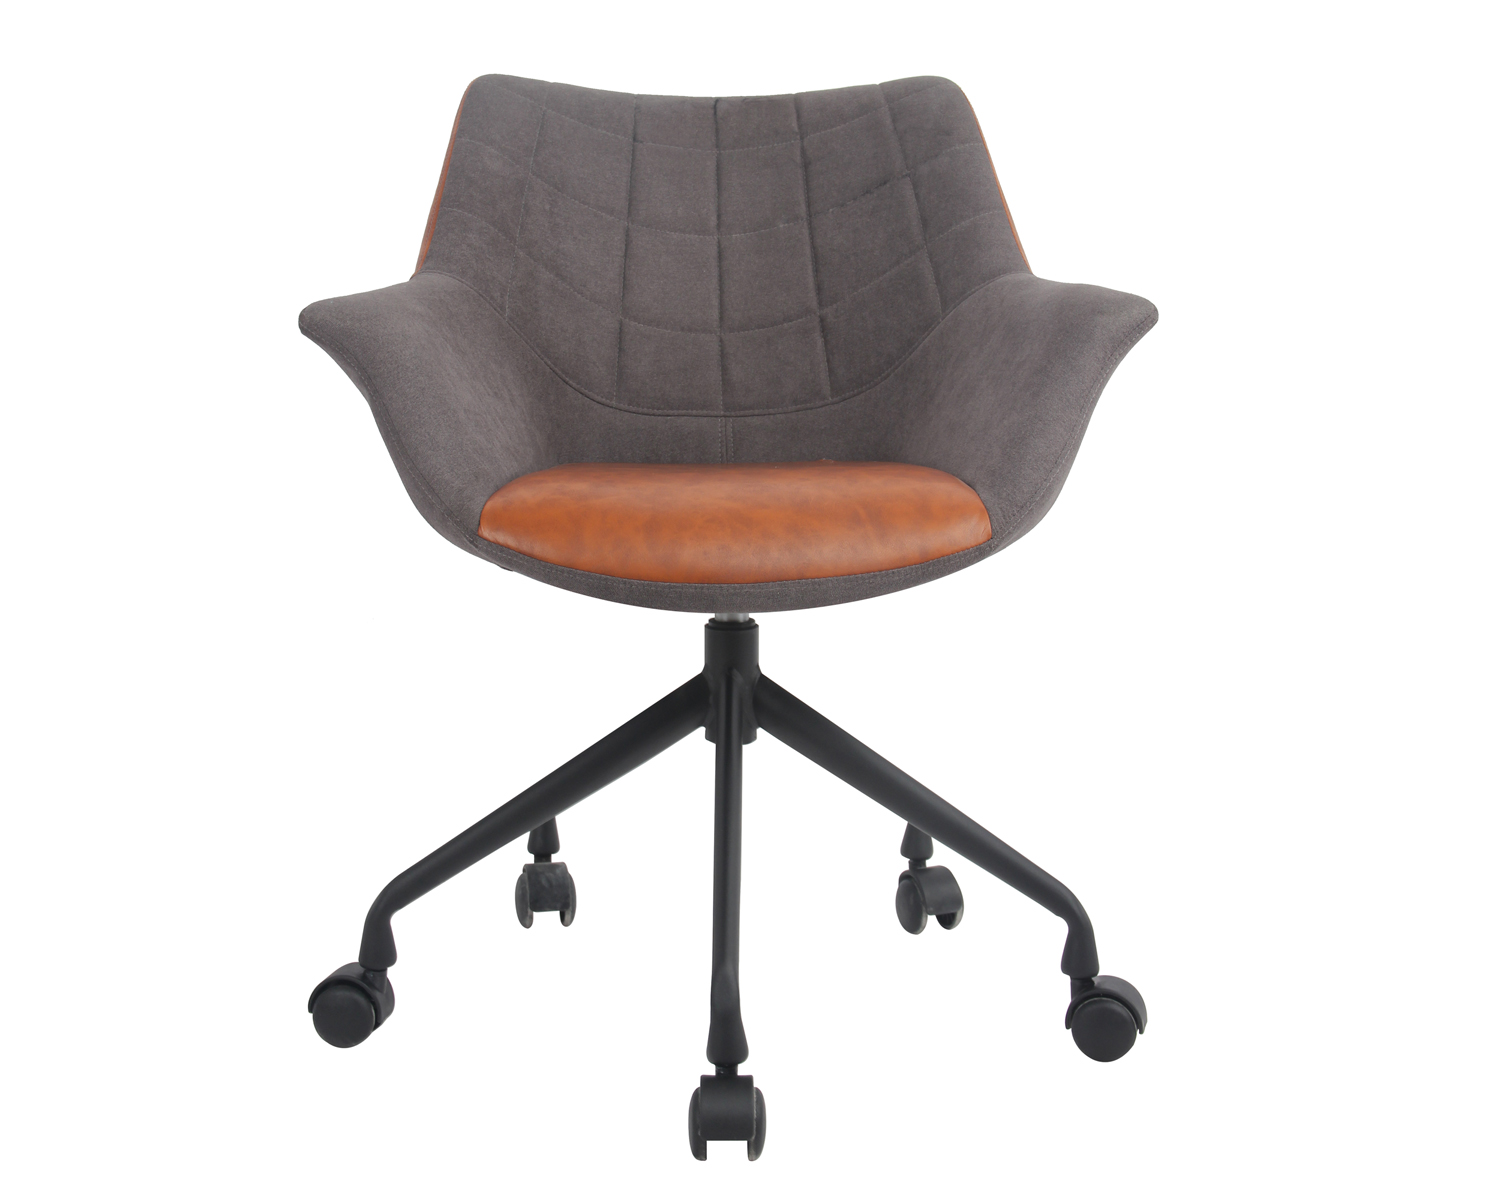 Silla de oficina en casa con buena espuma, silla decorativa de escritorio ajustable en altura con base de acero negro mate, tela de sarga, gris claro